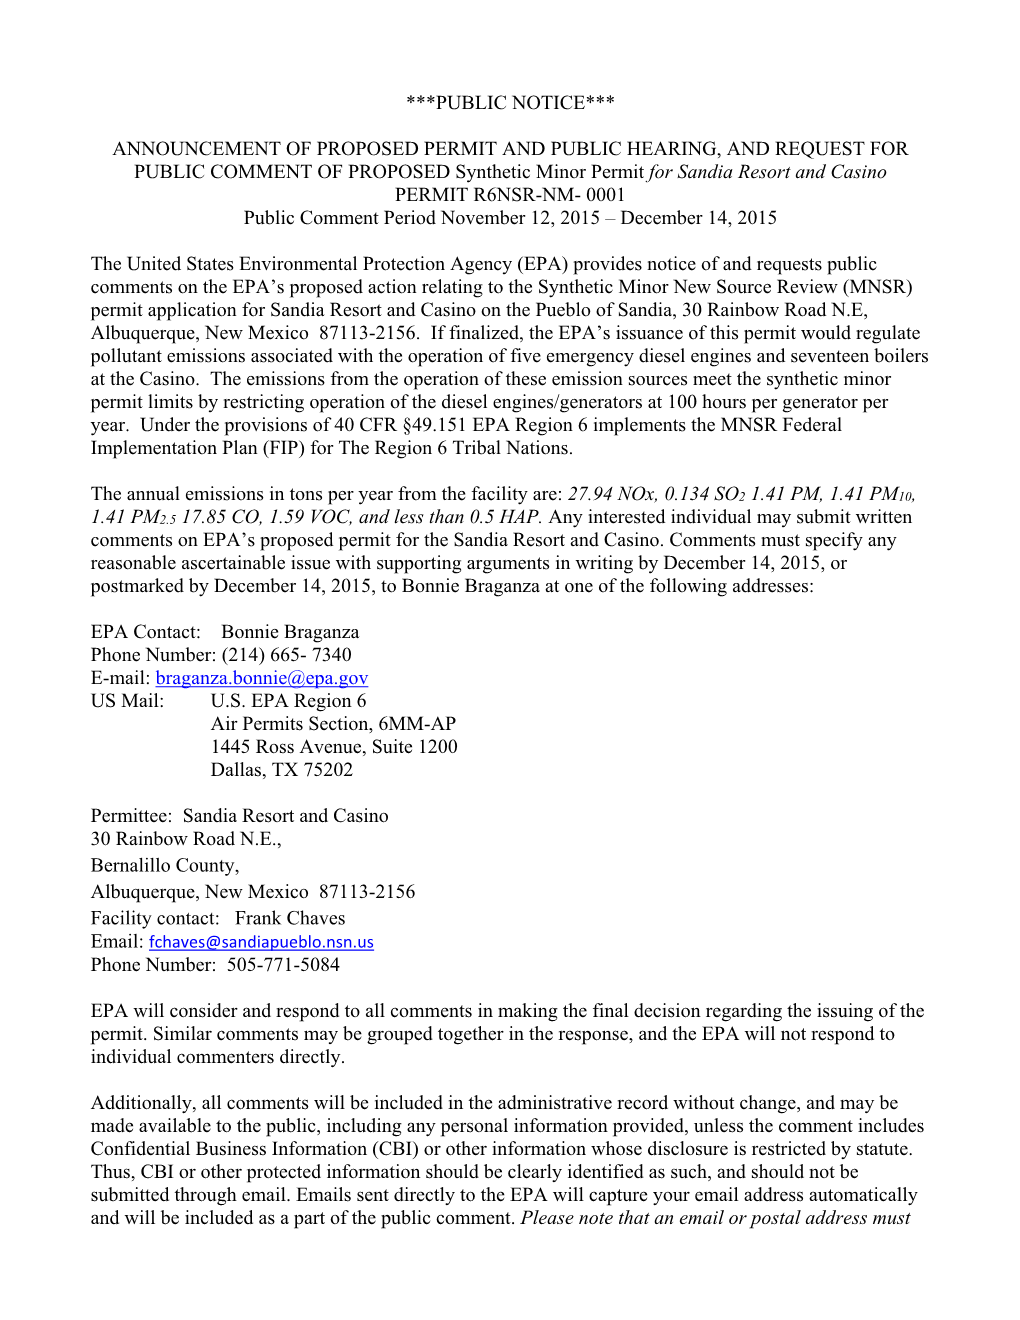 Sandia Pueblo Draft Permit Public Notice